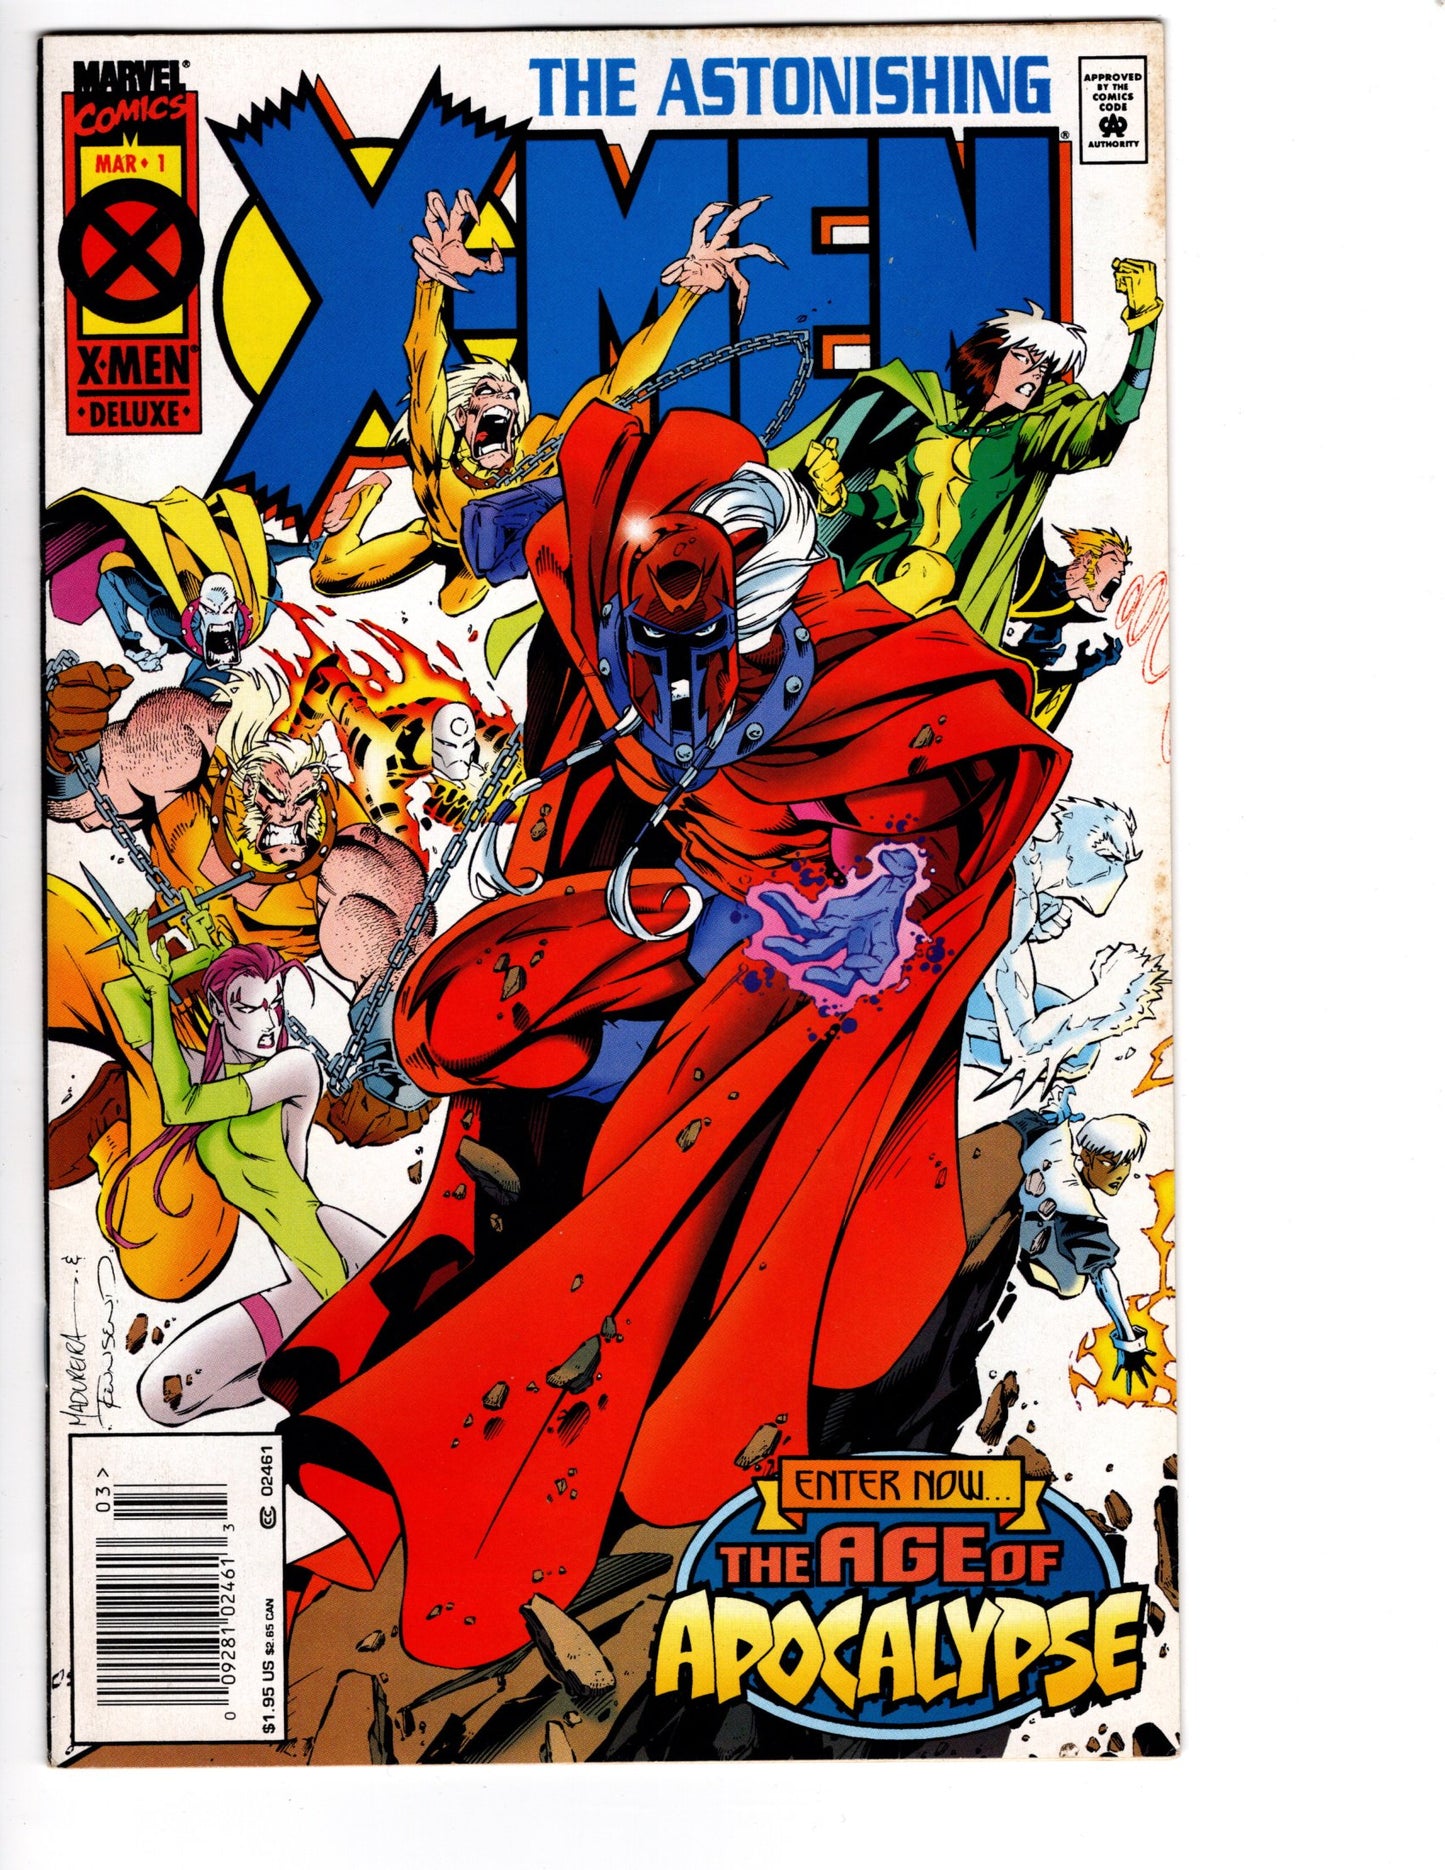 The Astonishing X-Men No. 1